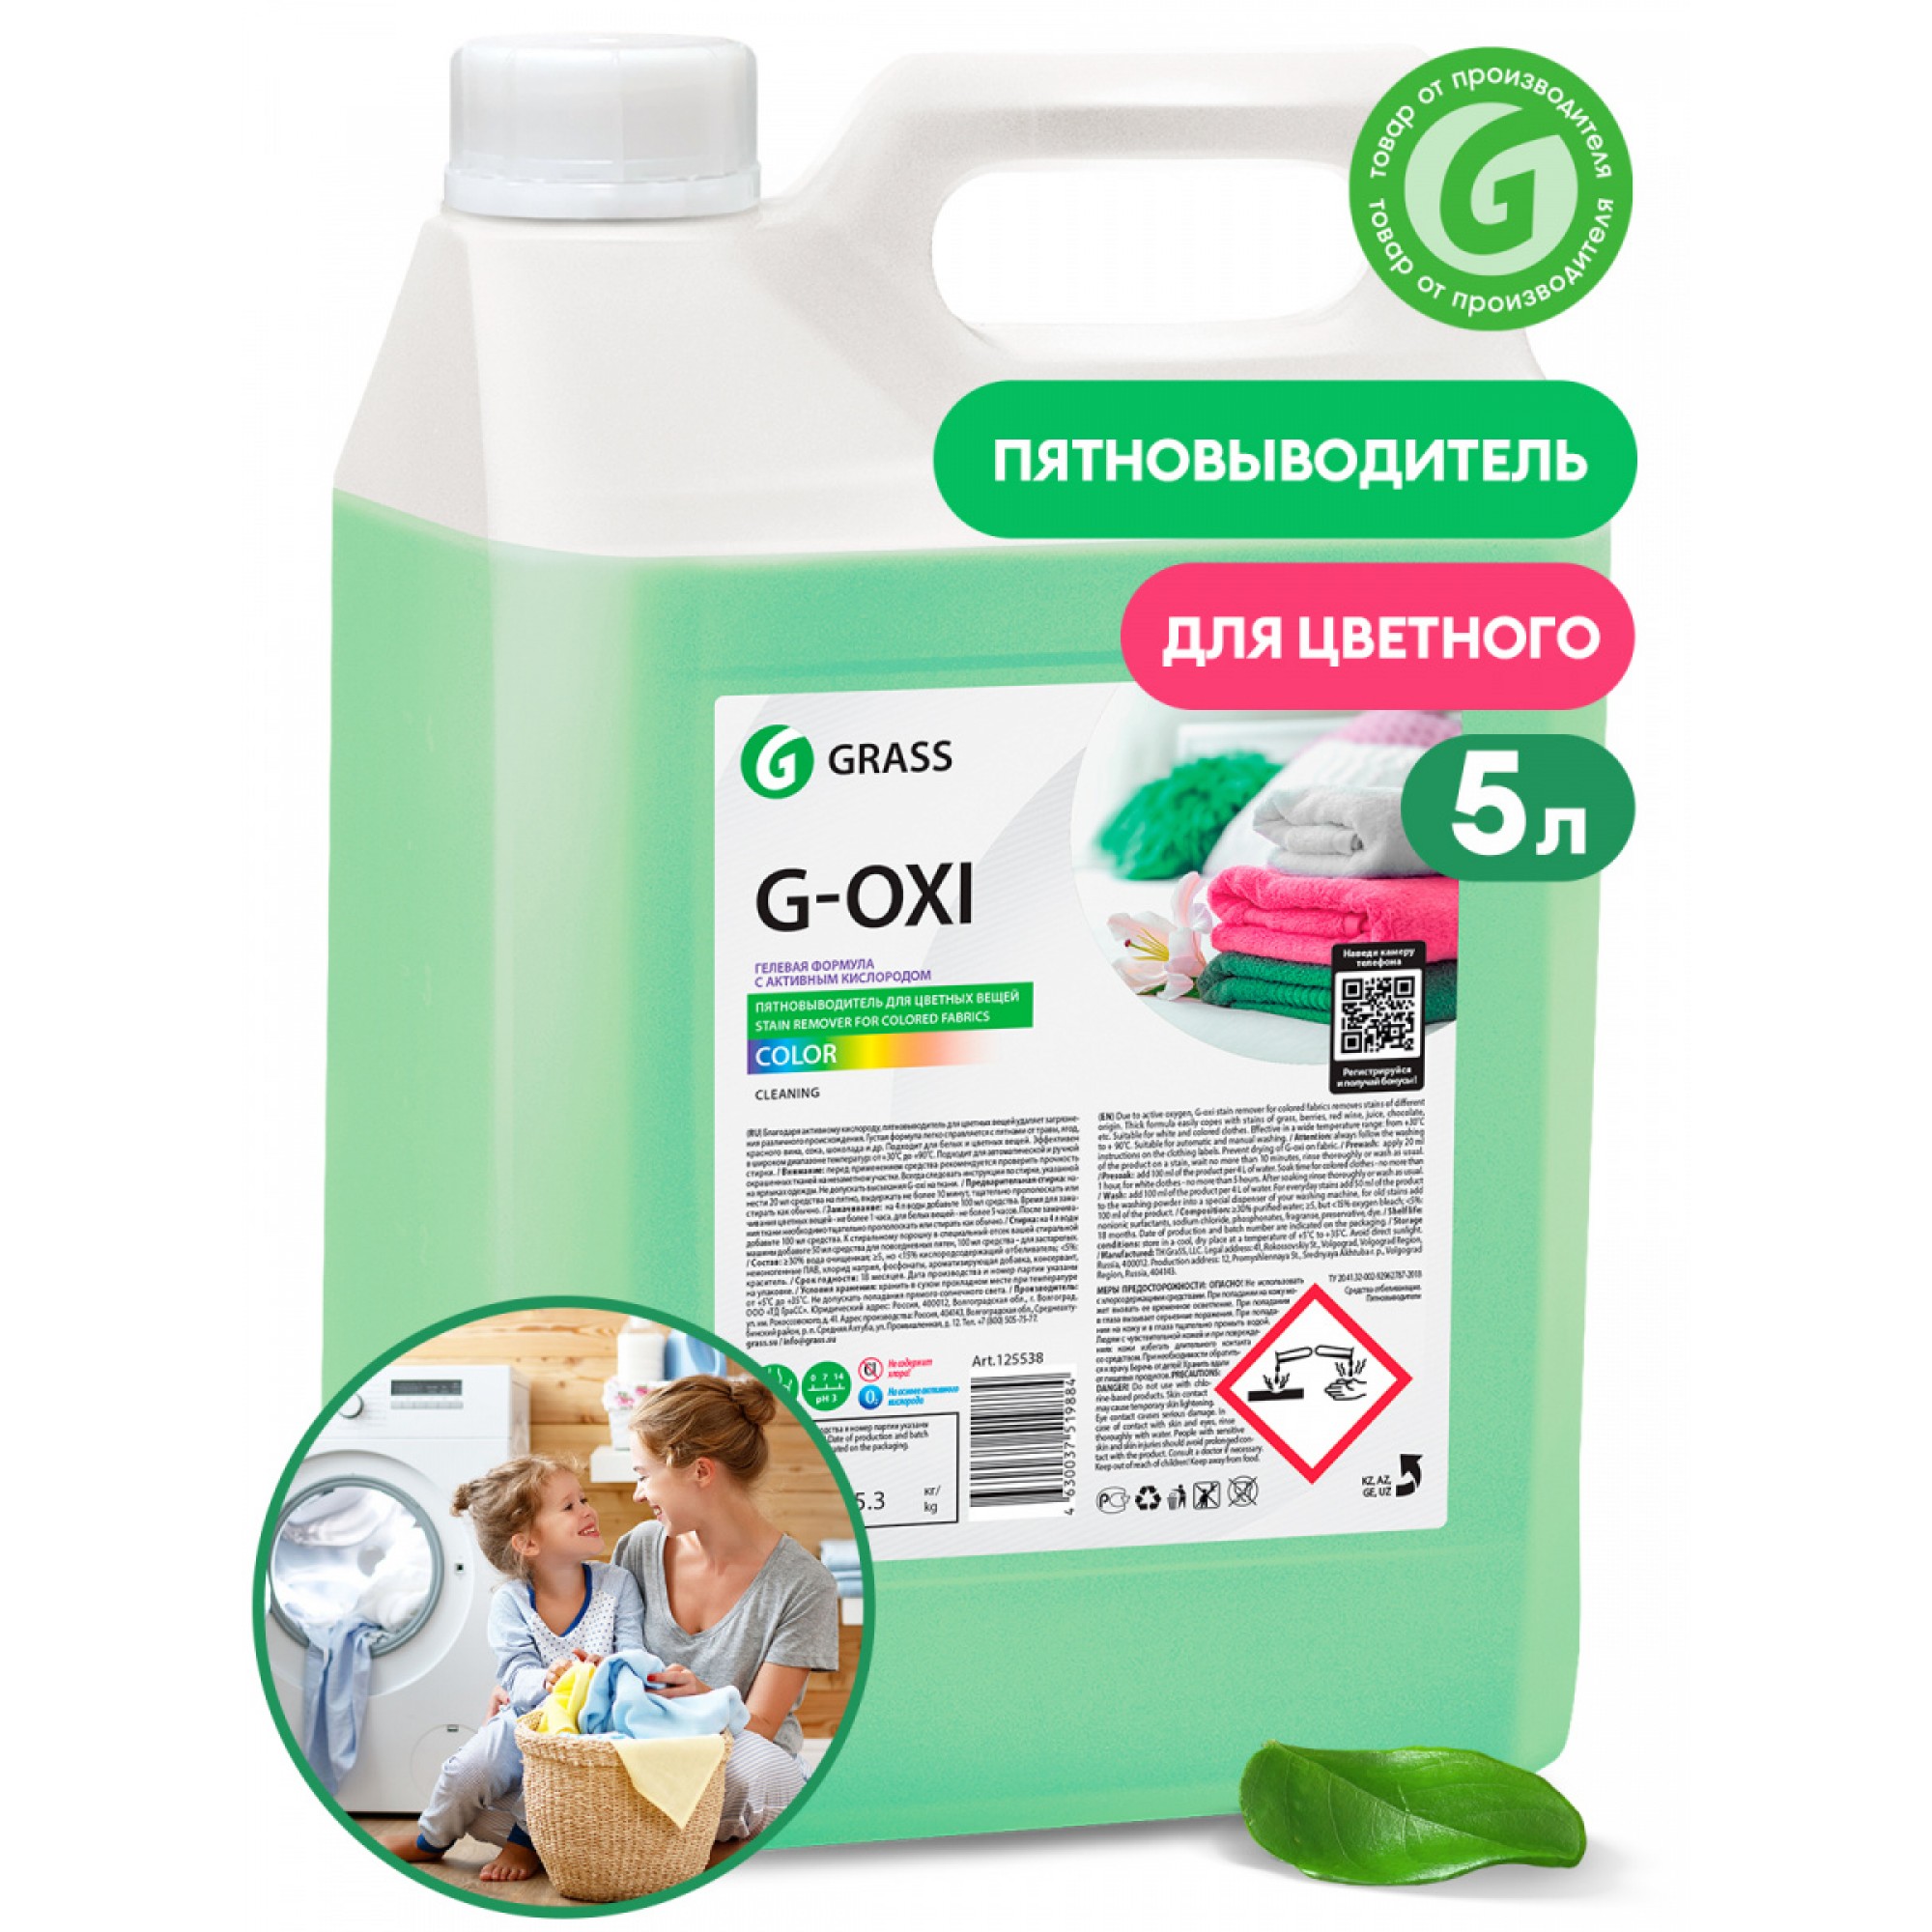 Пятновыводитель G-Oxi для цветных вещей с активным кислородом, канистра 5,3 кг